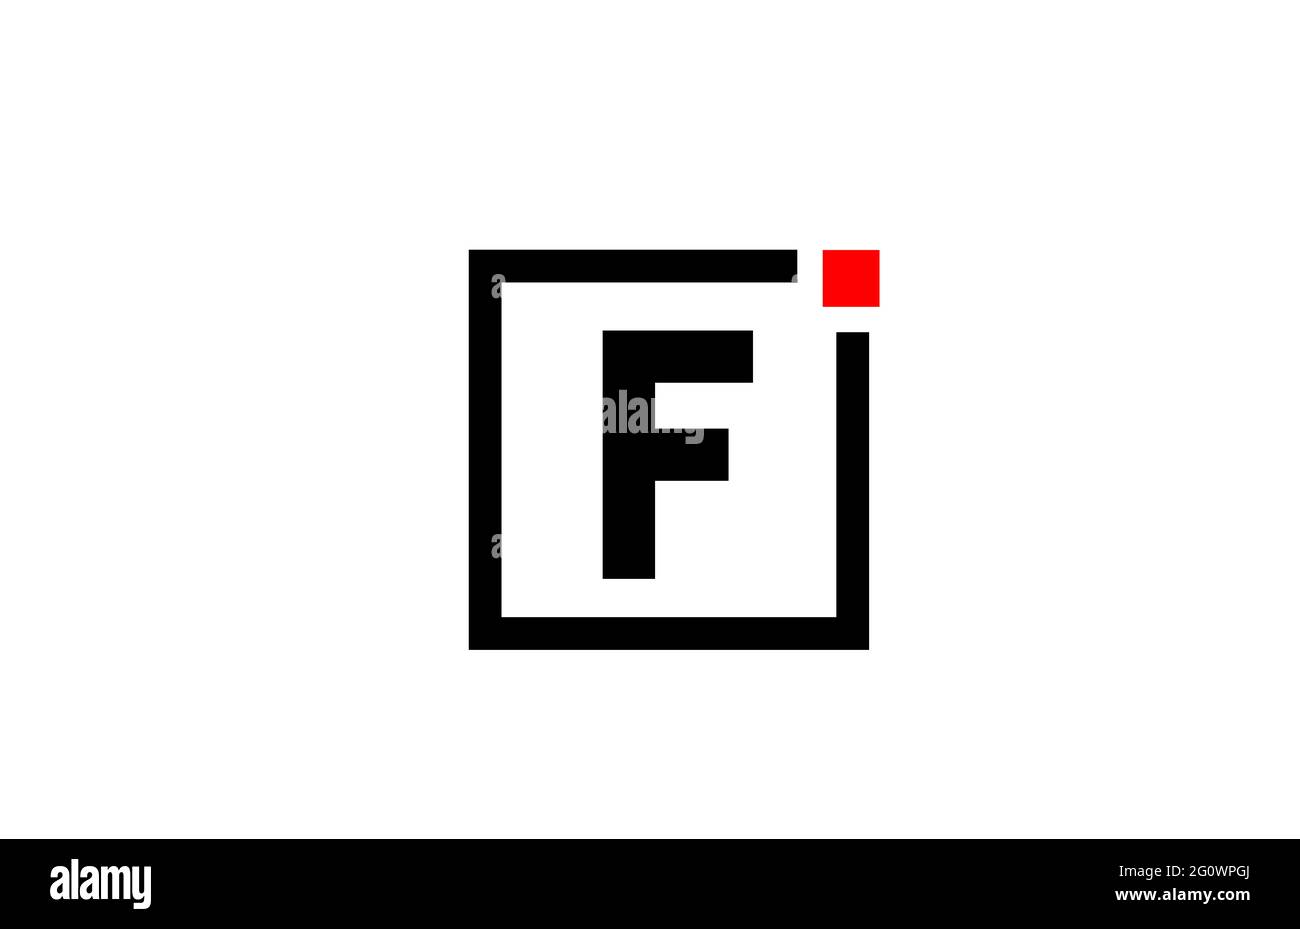 Logo con l'icona lettera dell'alfabeto F in bianco e nero. Design aziendale e aziendale con punto quadrato e rosso. Modello di identità aziendale creativa Foto Stock